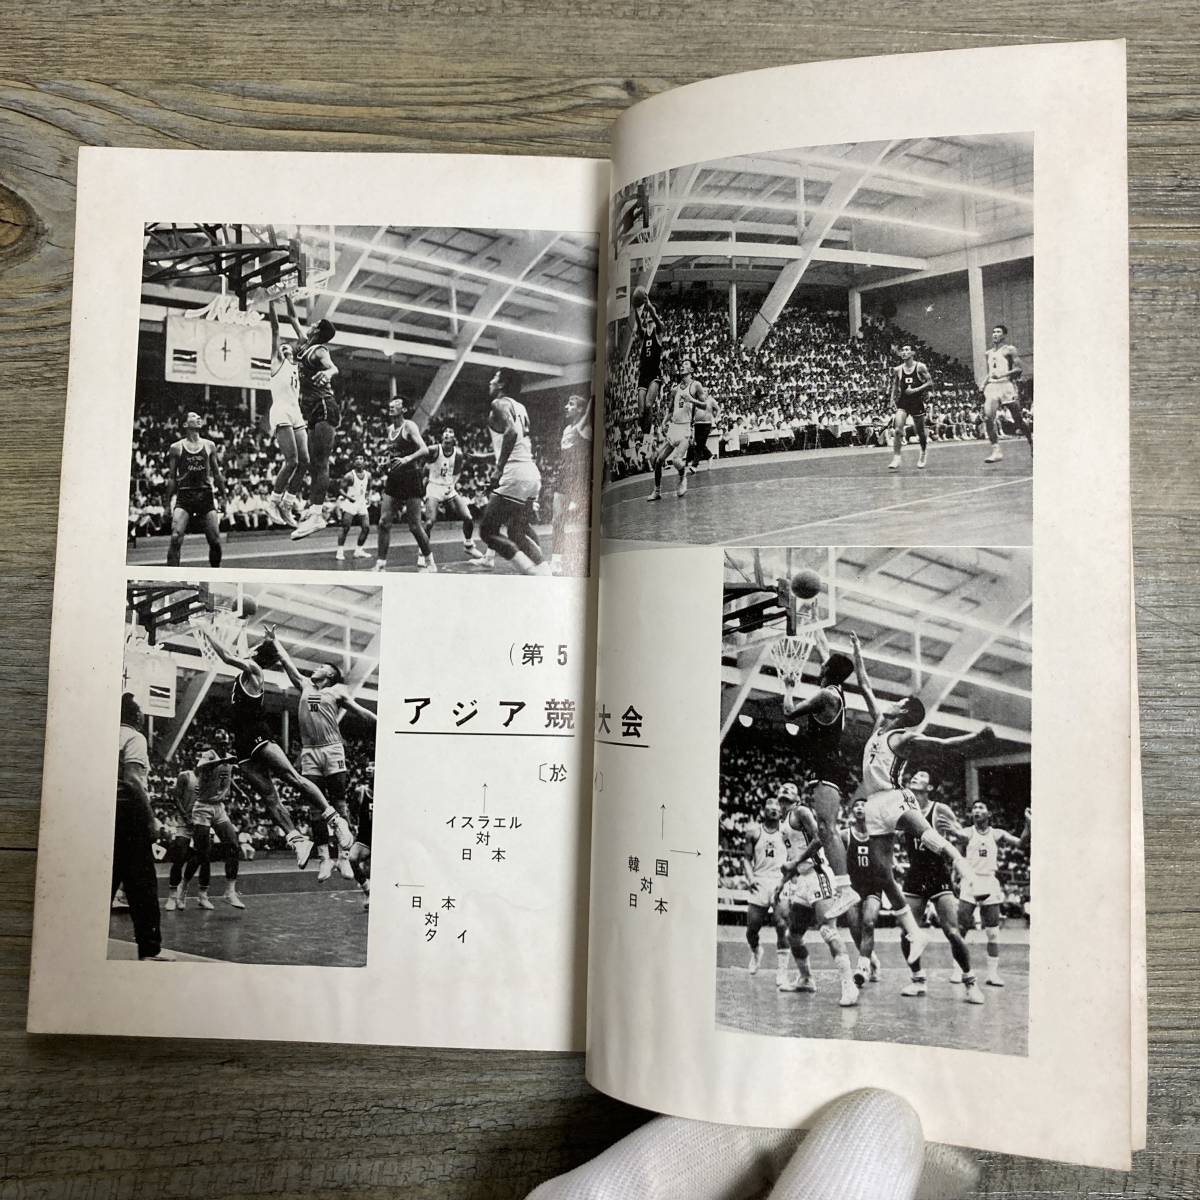 S-3058# баскетбол No.76 1966 год 3 месяц 10 день выпуск # Азия состязание собрание соревнование результат оценка # Япония баскетбол ассоциация # баскетбол информация журнал 